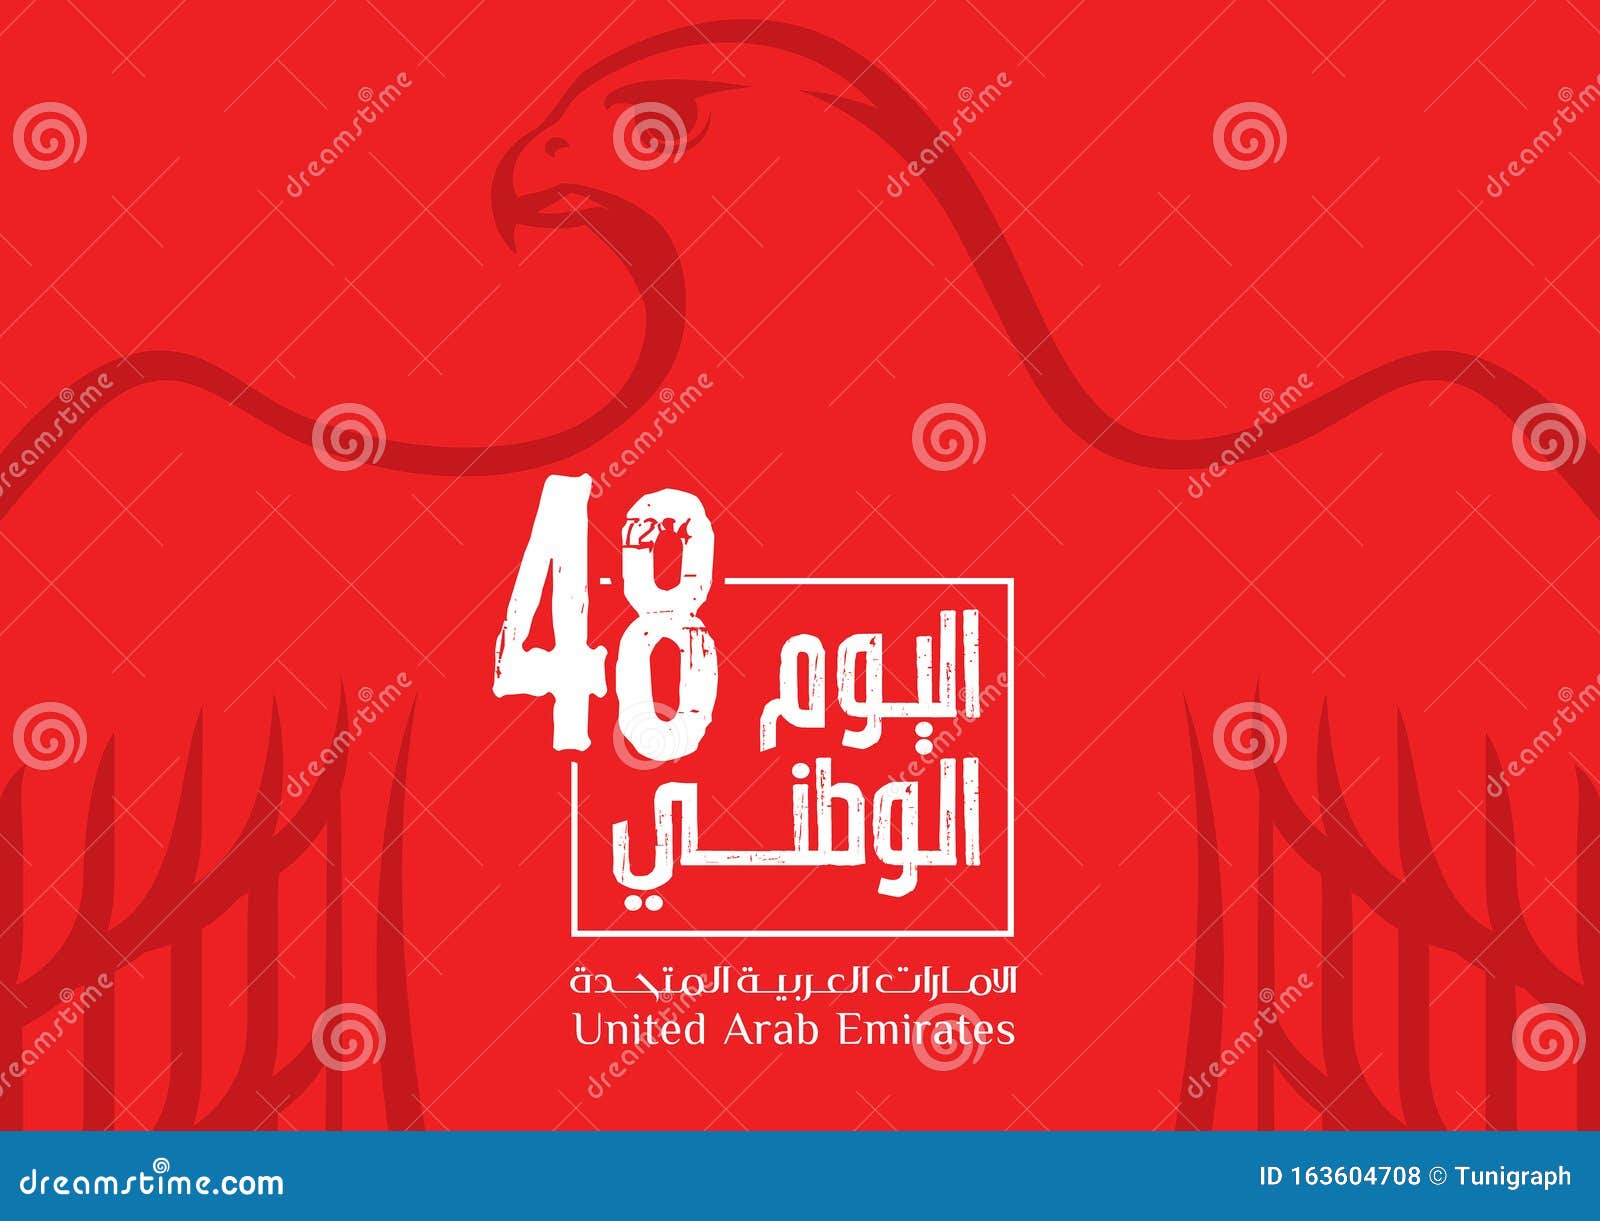 united arab emirates national day uae